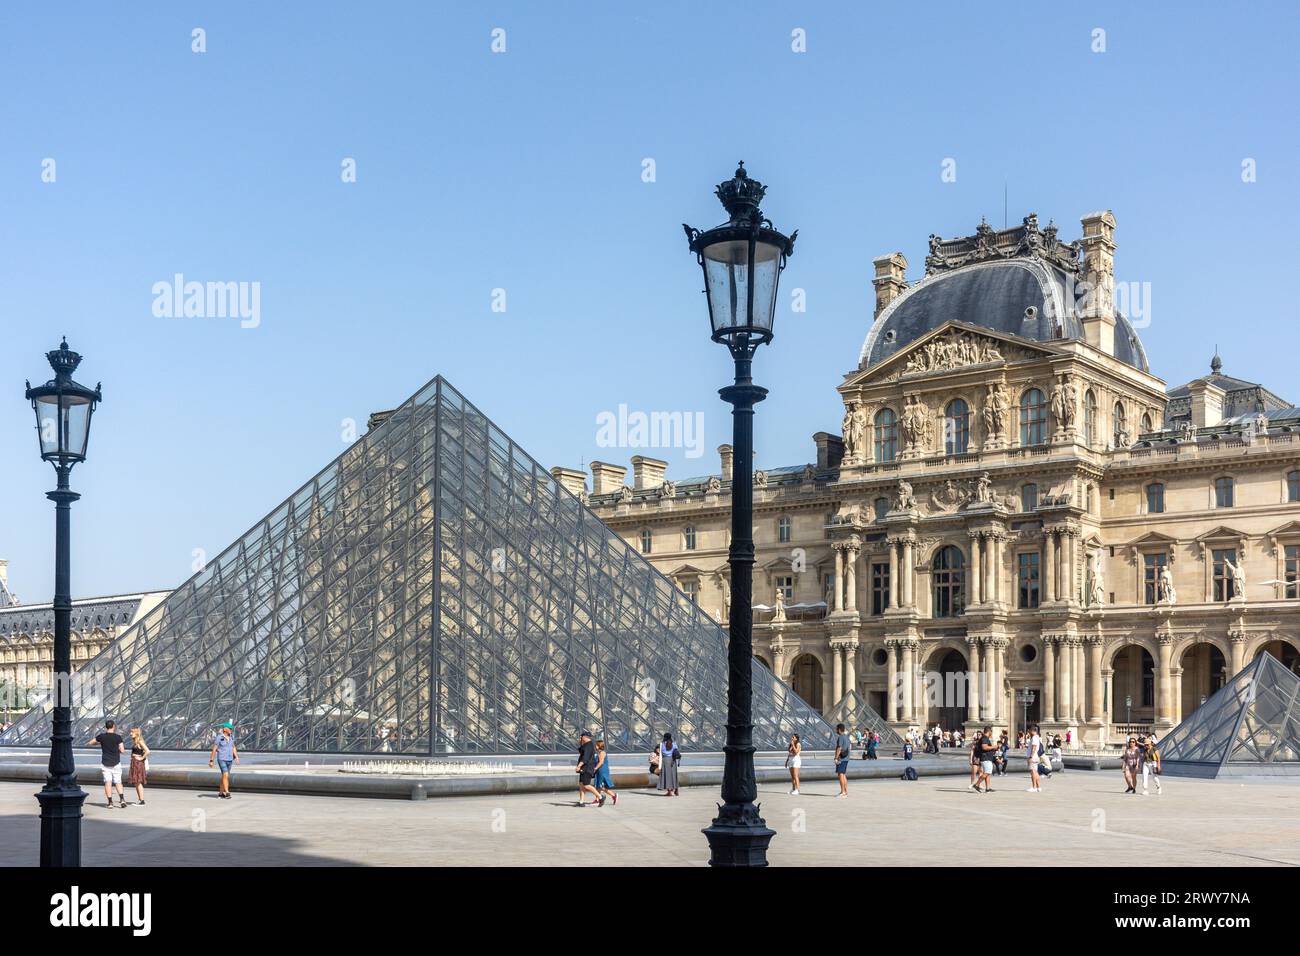 Musée du Louvre (Musée du Louvre) et Pyramide de Leoh Ming, place du carrousel, Paris, Île-de-France, France Banque D'Images